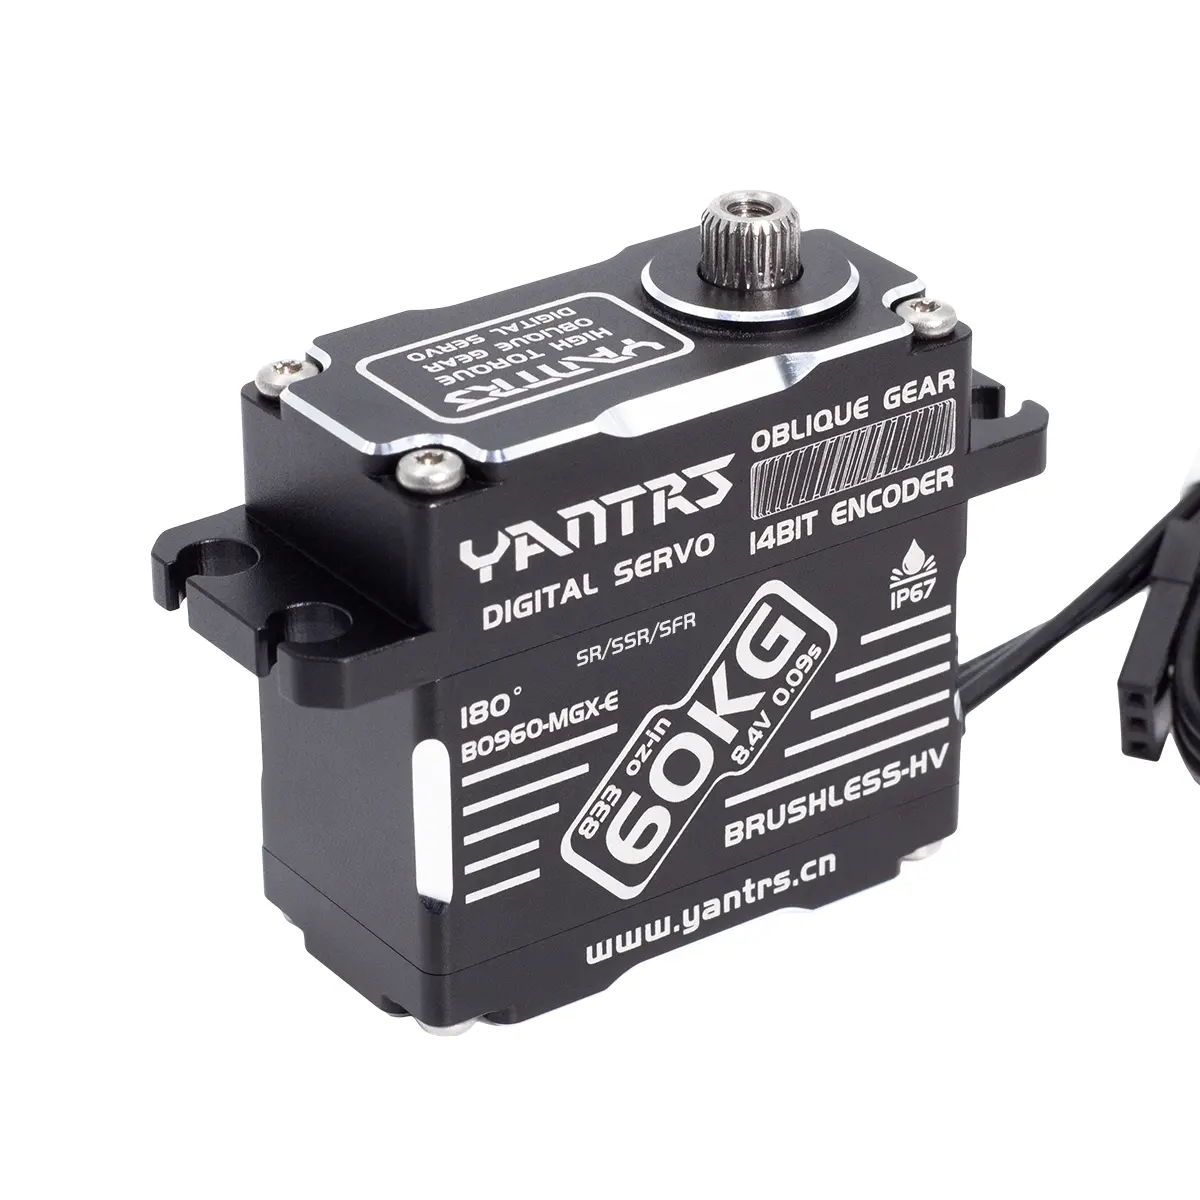 YANTRS 60KG Brushless Servo induzione magnetica 8.4V sterzo digitale impermeabile ad alta coppia per supporto auto RC SANWA/SR/SSR